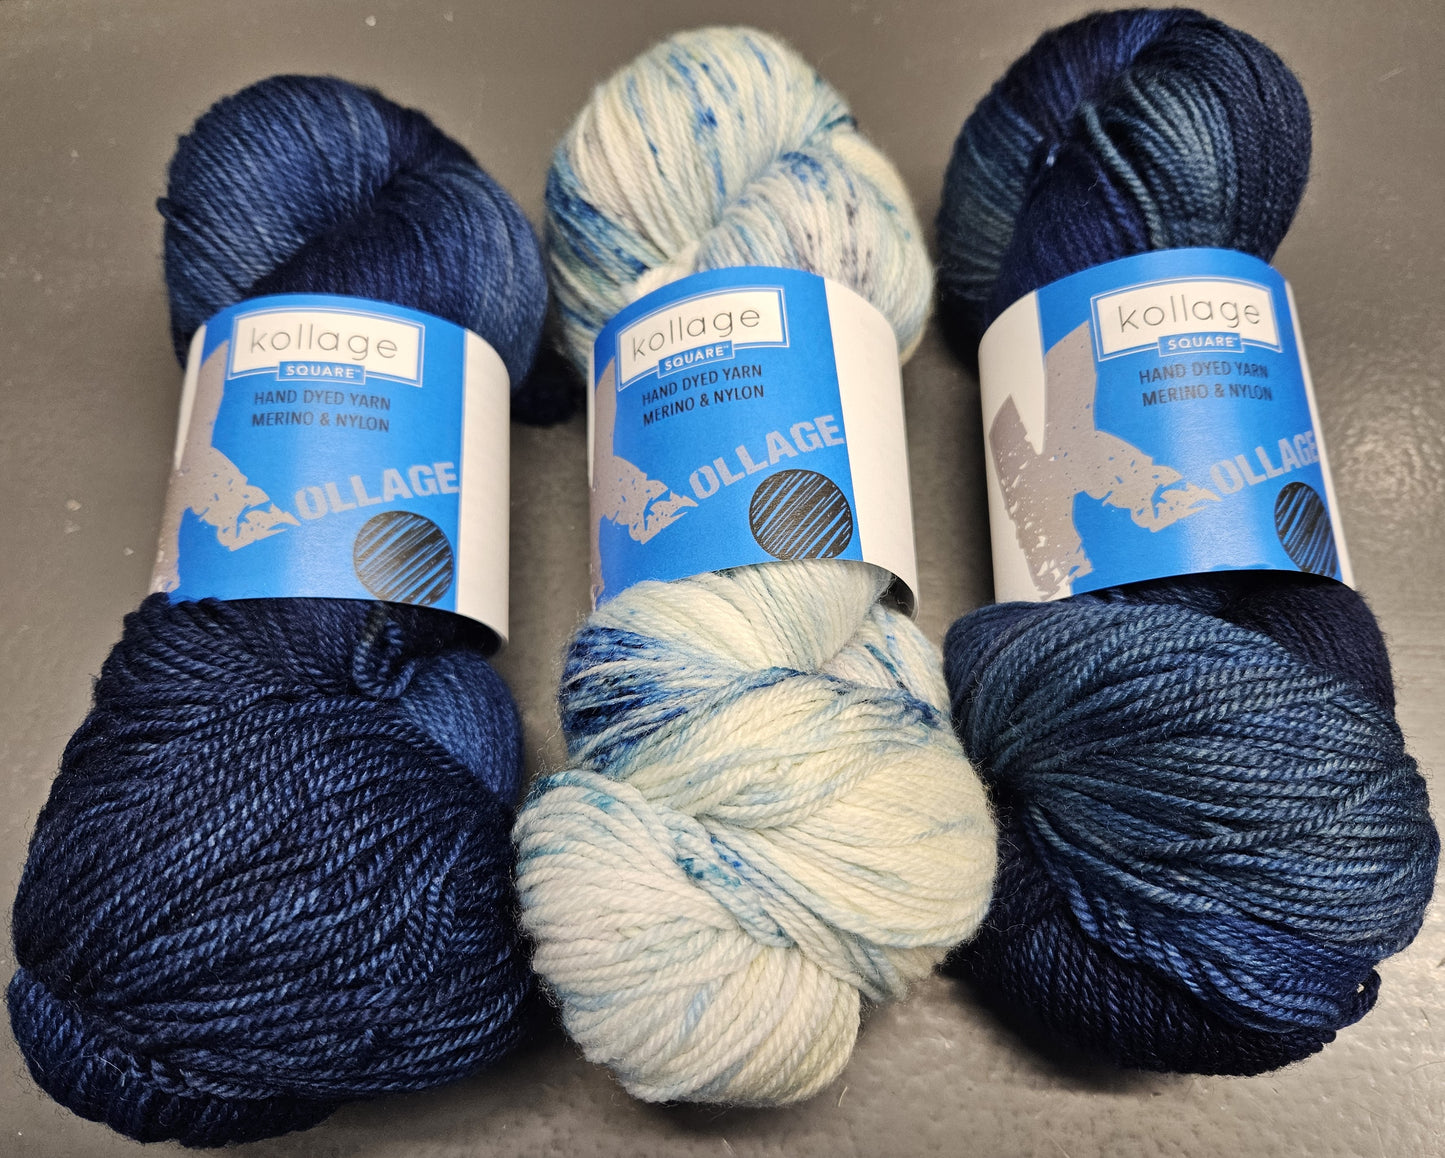 kollage SQUARE - Needle and Yarn bundle - Blue